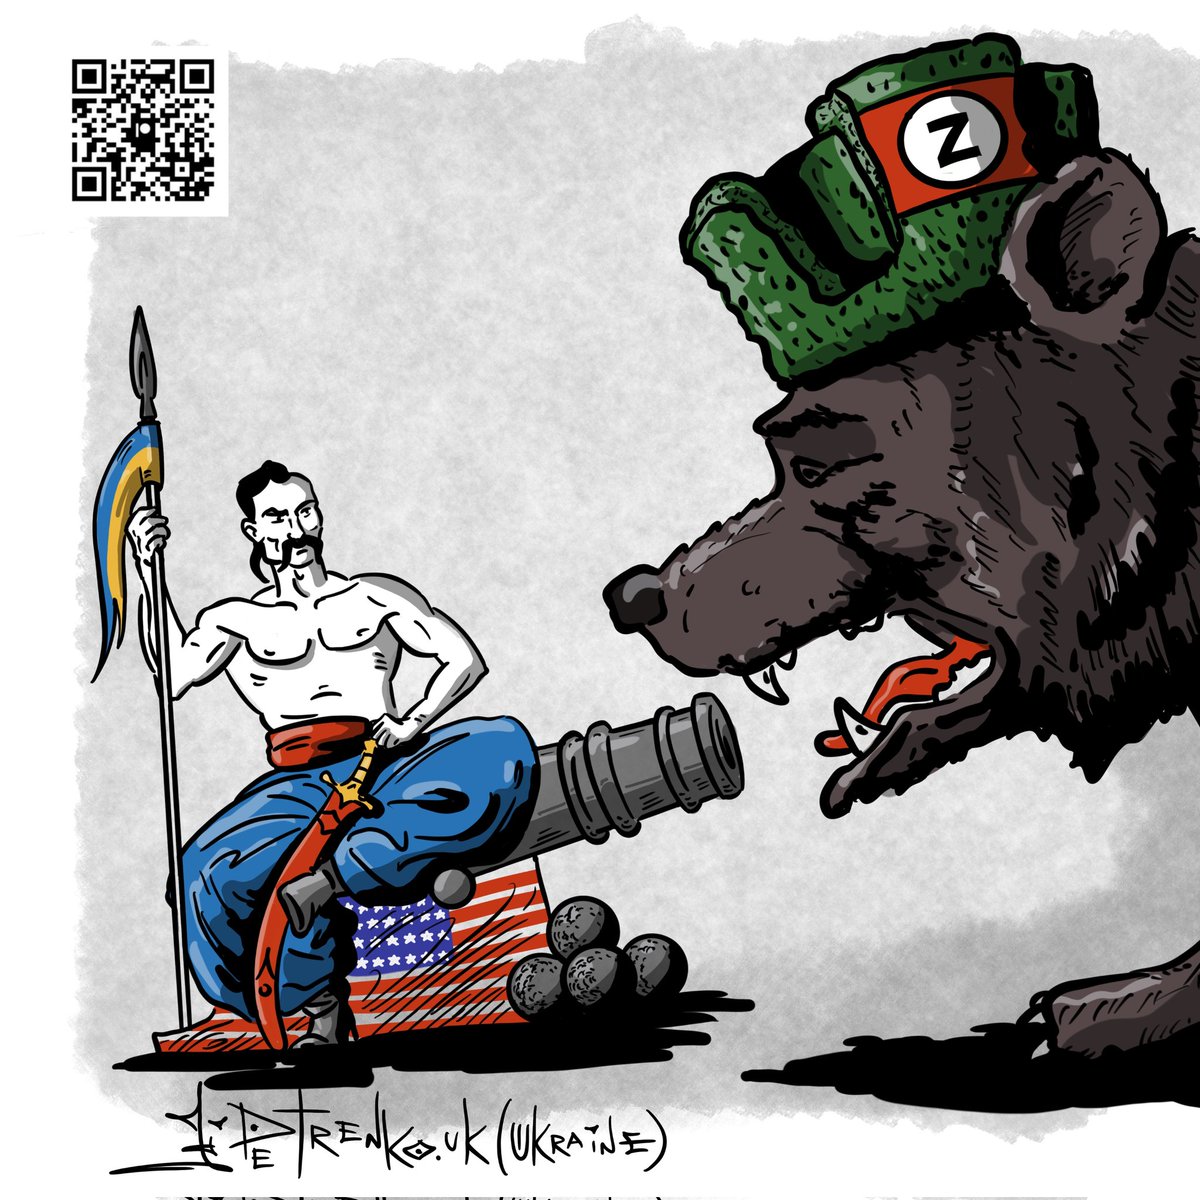 Вже скоро рашиська росія отримає своє... +++++++ Друзі, в мене велике прохання: підпишіться на канал українського художника карикатуриста @PetrenkoAndryi